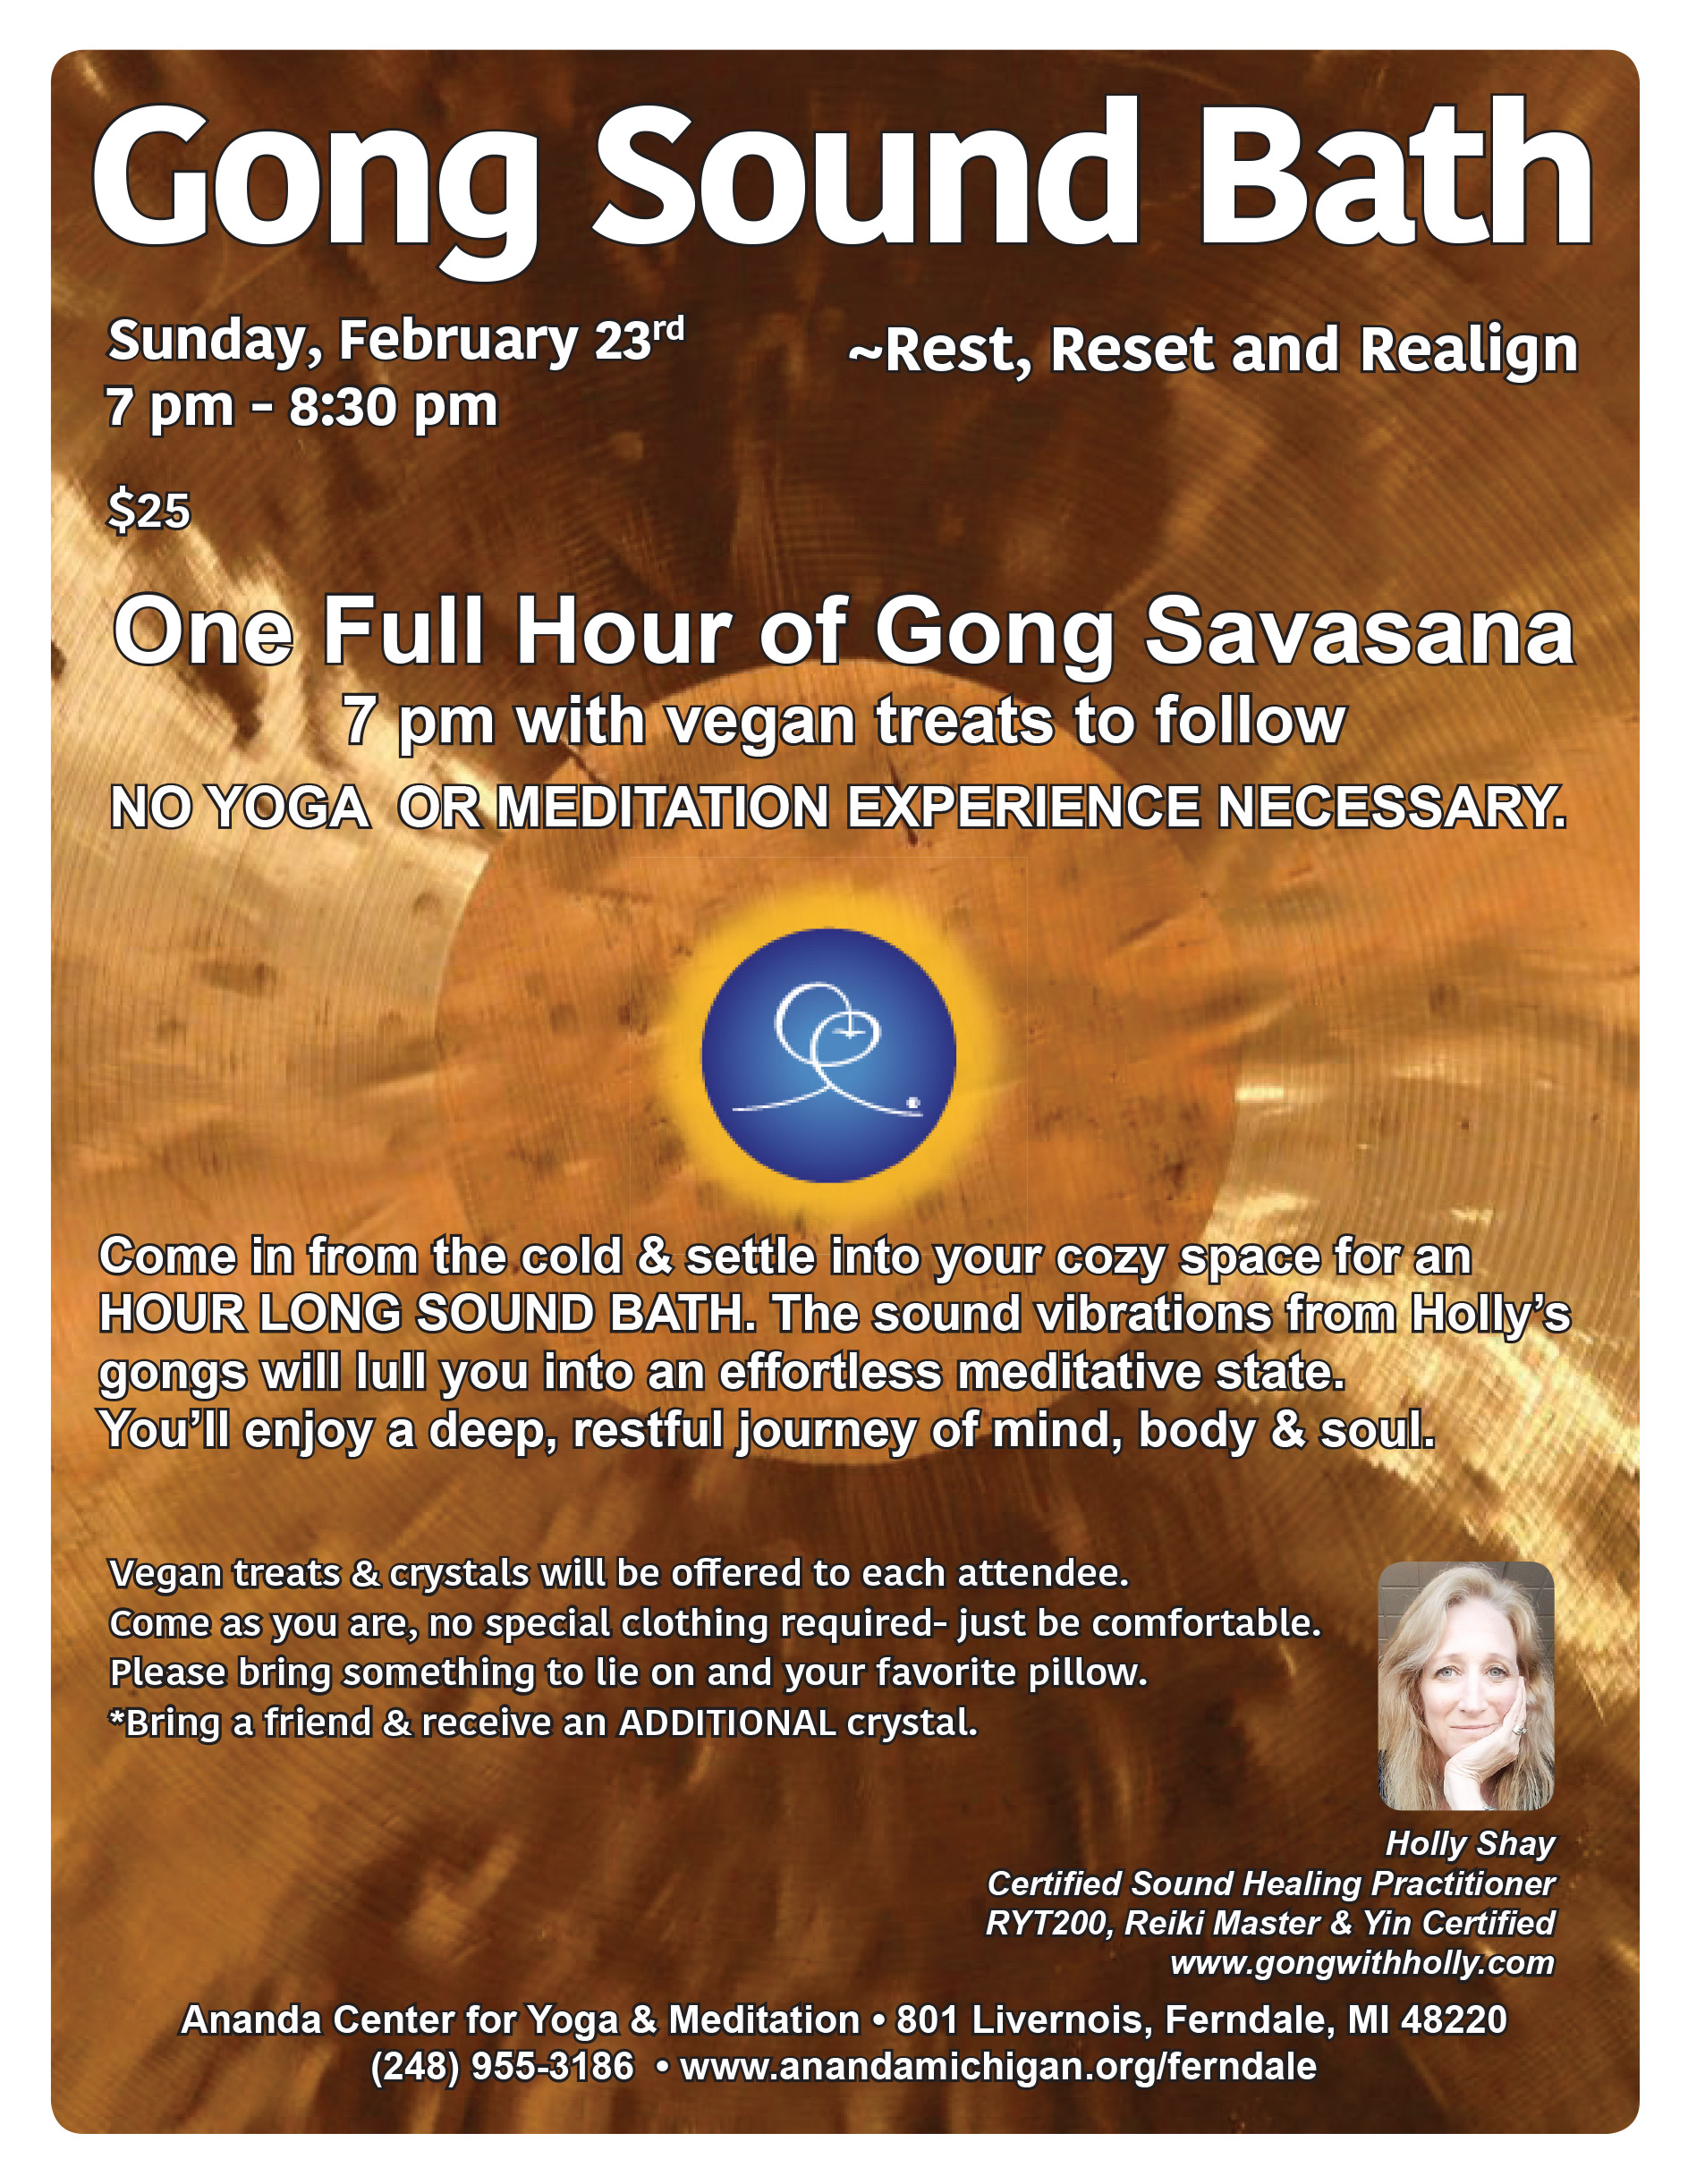 Gong Sound Bath, Sun Feb 23, 7pm, Ananda Center for Yoga & Meditation, Ferndale, MI